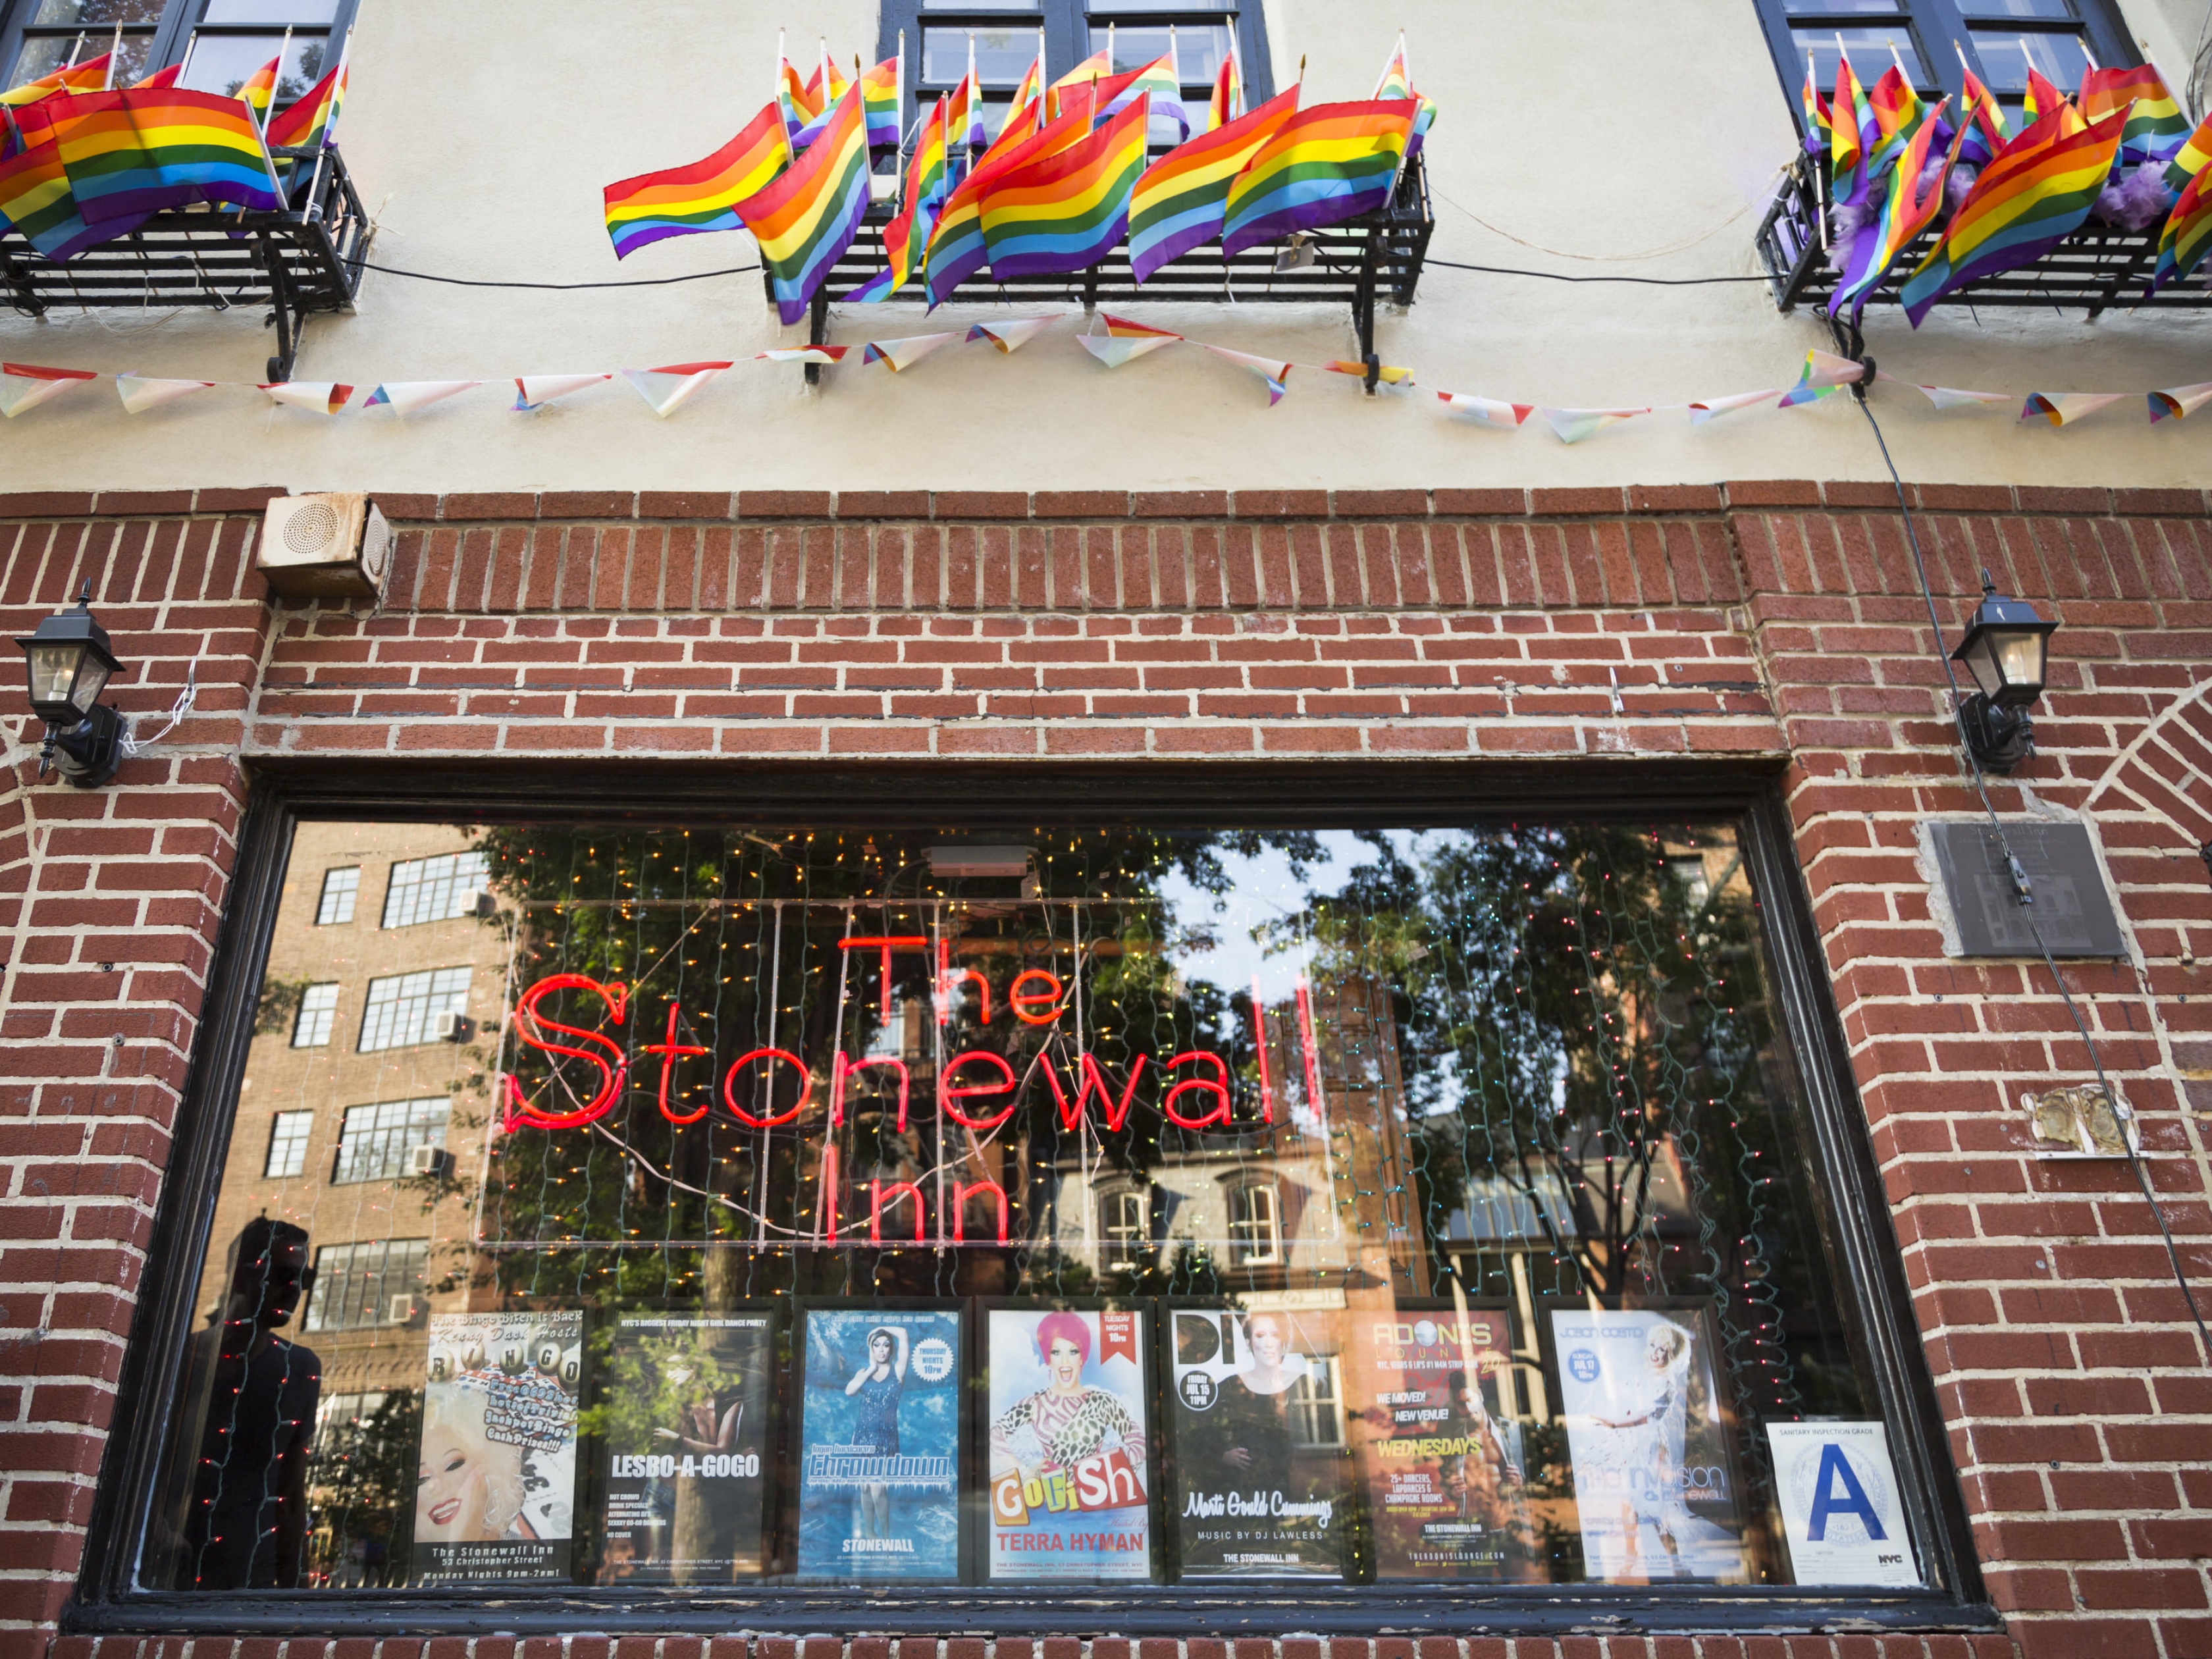 Letrero de neón que dice "The Stonewall Inn" en una ventana de un edificio de ladrillos con muchas pequeñas banderas arcoíris sobre la ventana.